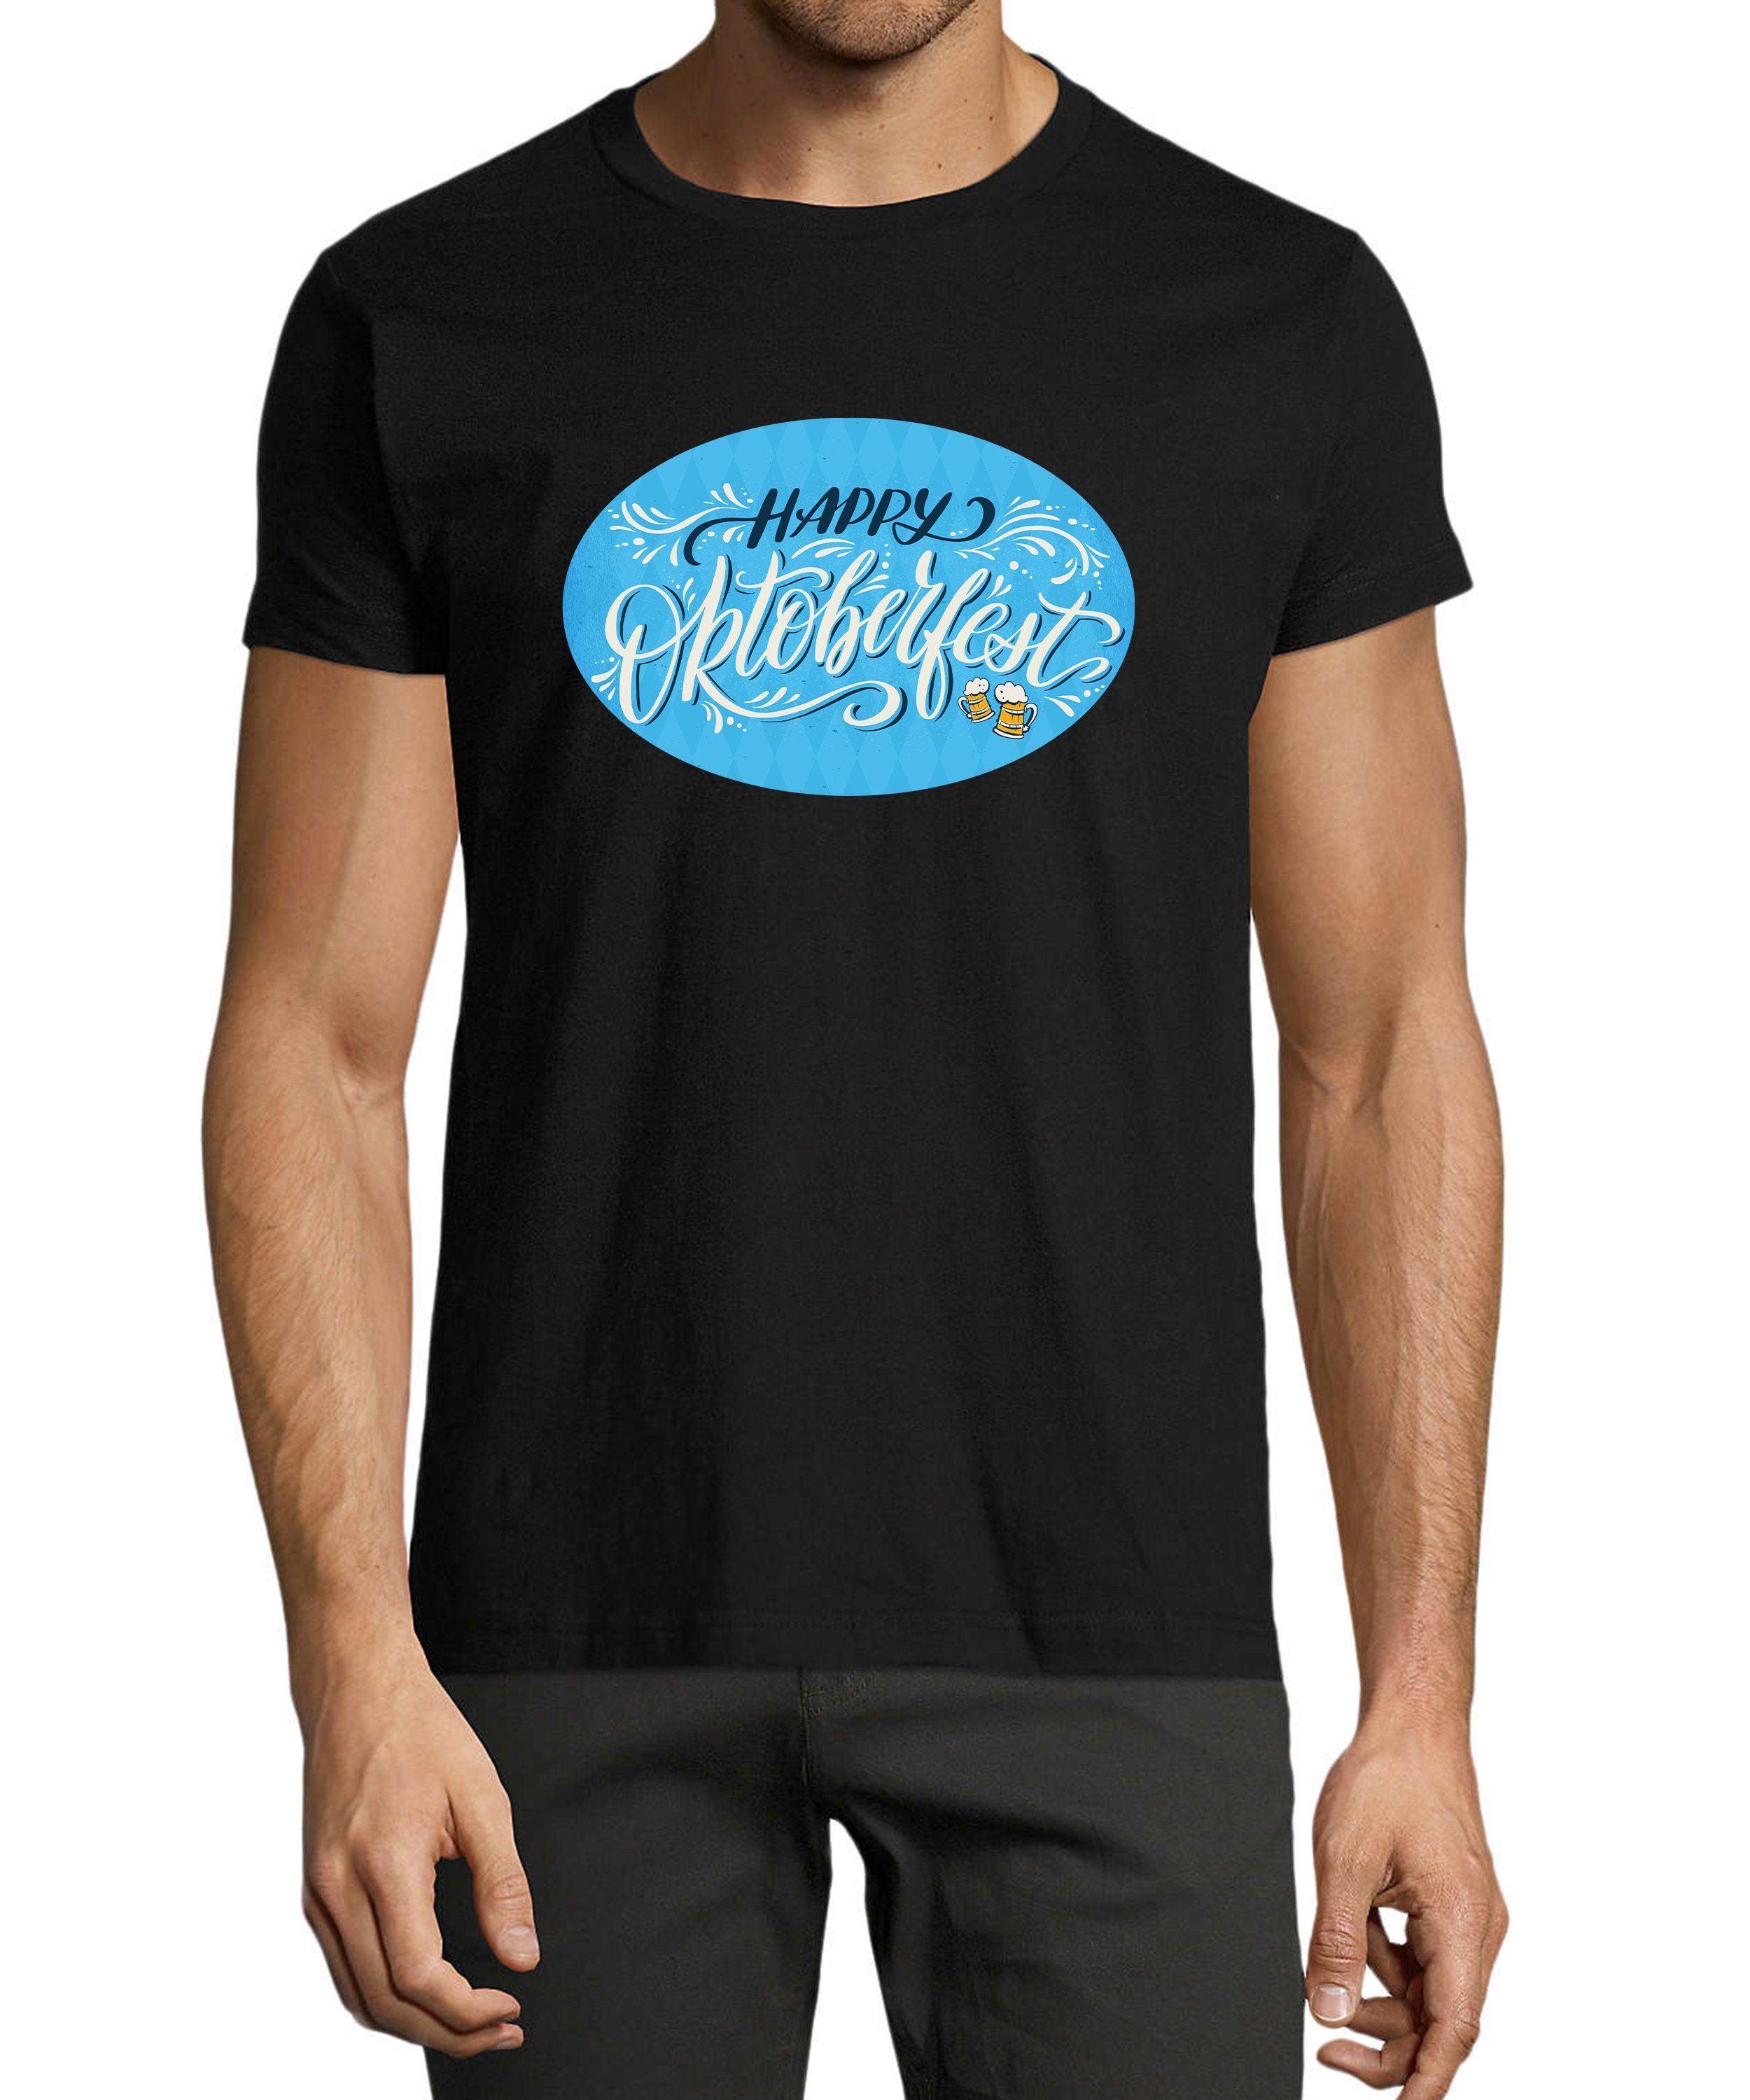 MyDesign24 T-Shirt Herren Party Shirt - Trinkshirt Oktoberfest T-Shirt Baumwollshirt mit Aufdruck Regular Fit, i322 schwarz